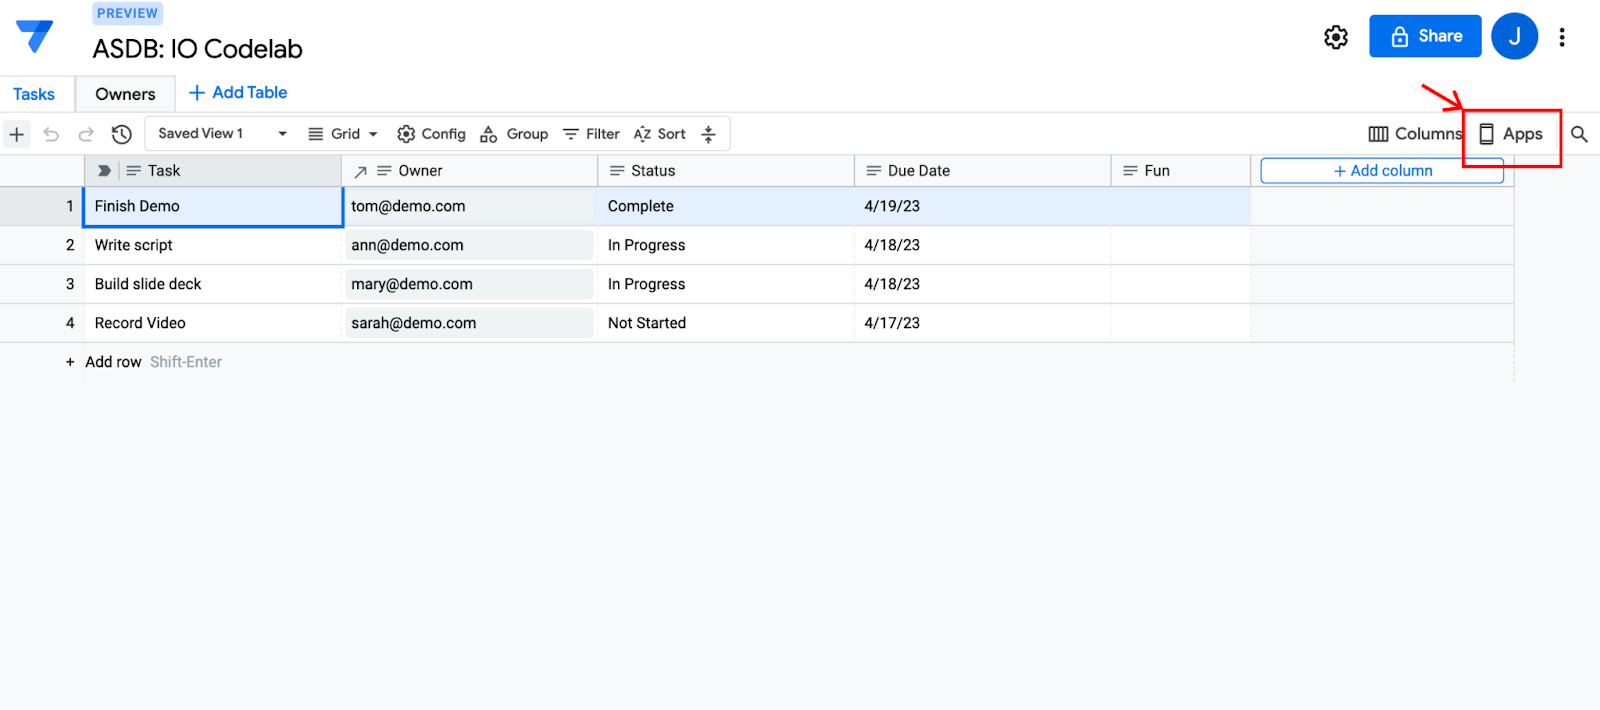 Снимок экрана редактора базы данных AppSheet с выделенной кнопкой «Приложения» справа.